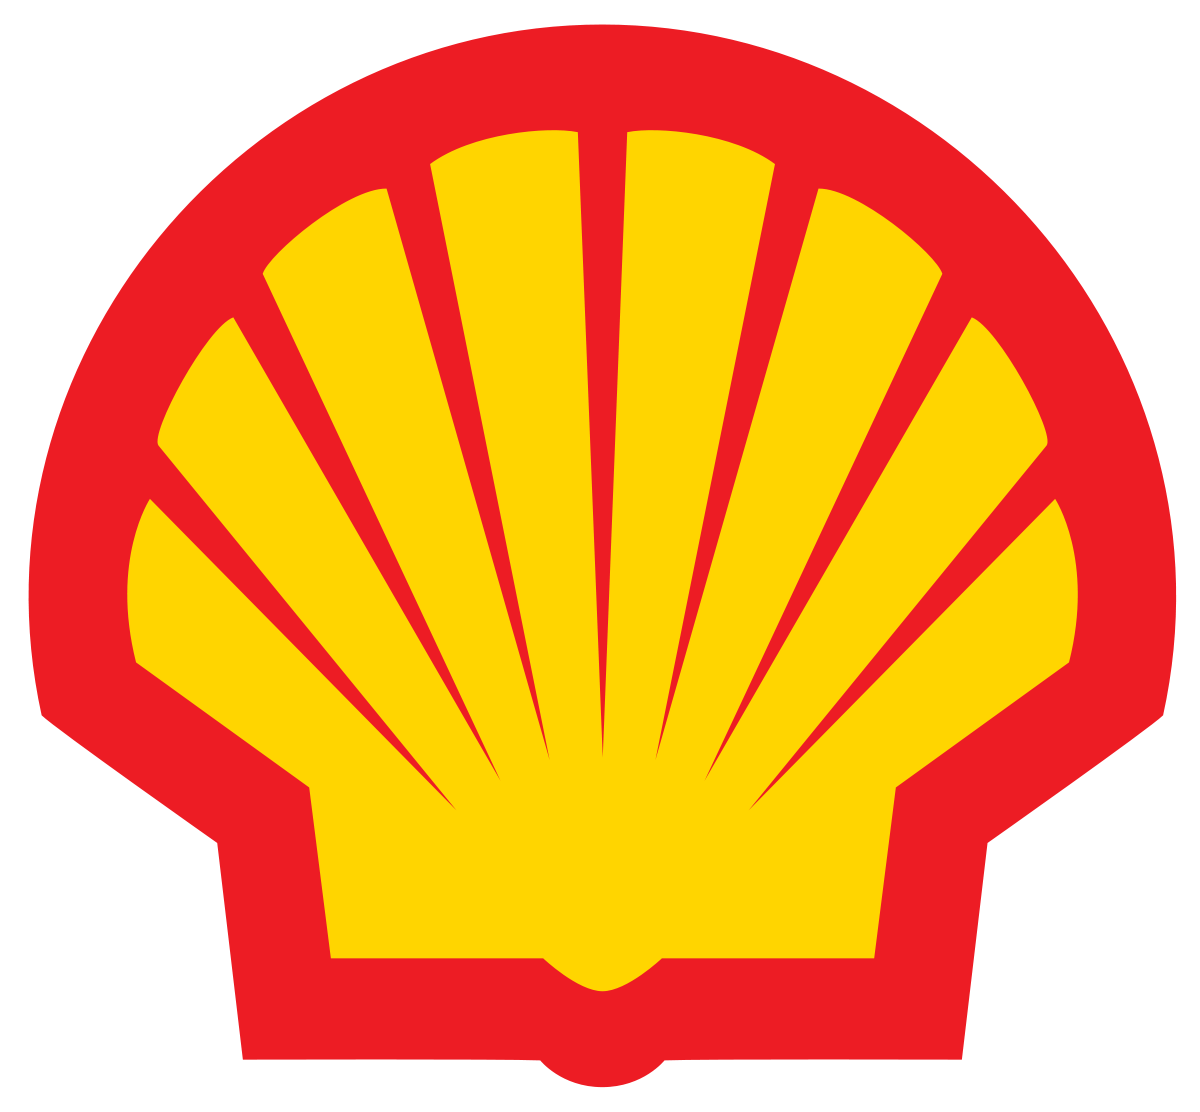 Gasoline Company Logo - Shell Oil Company